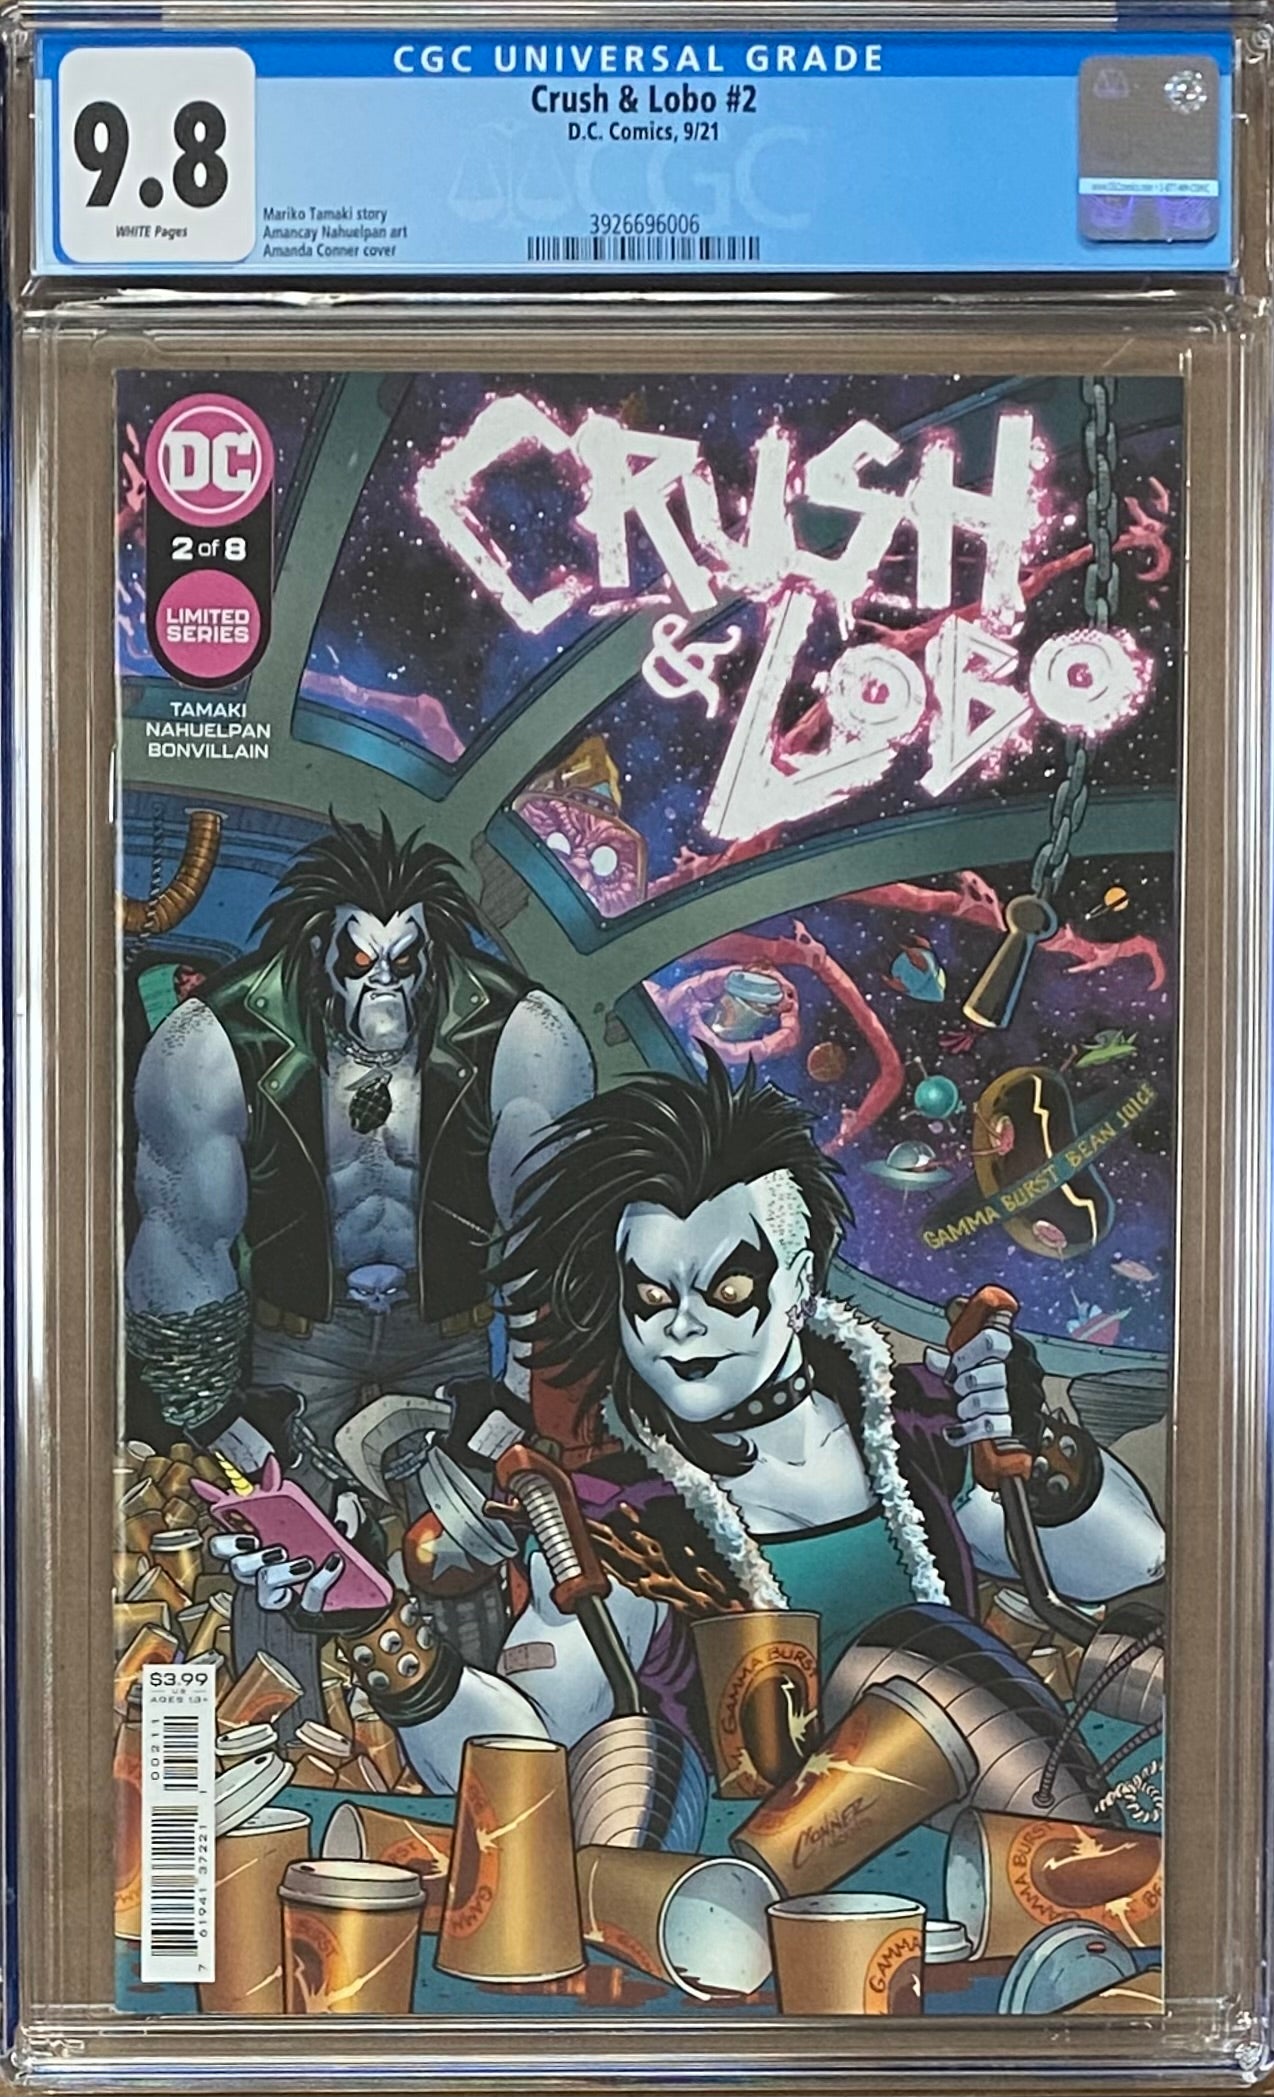 Crush & Lobo #2 CGC 9.8